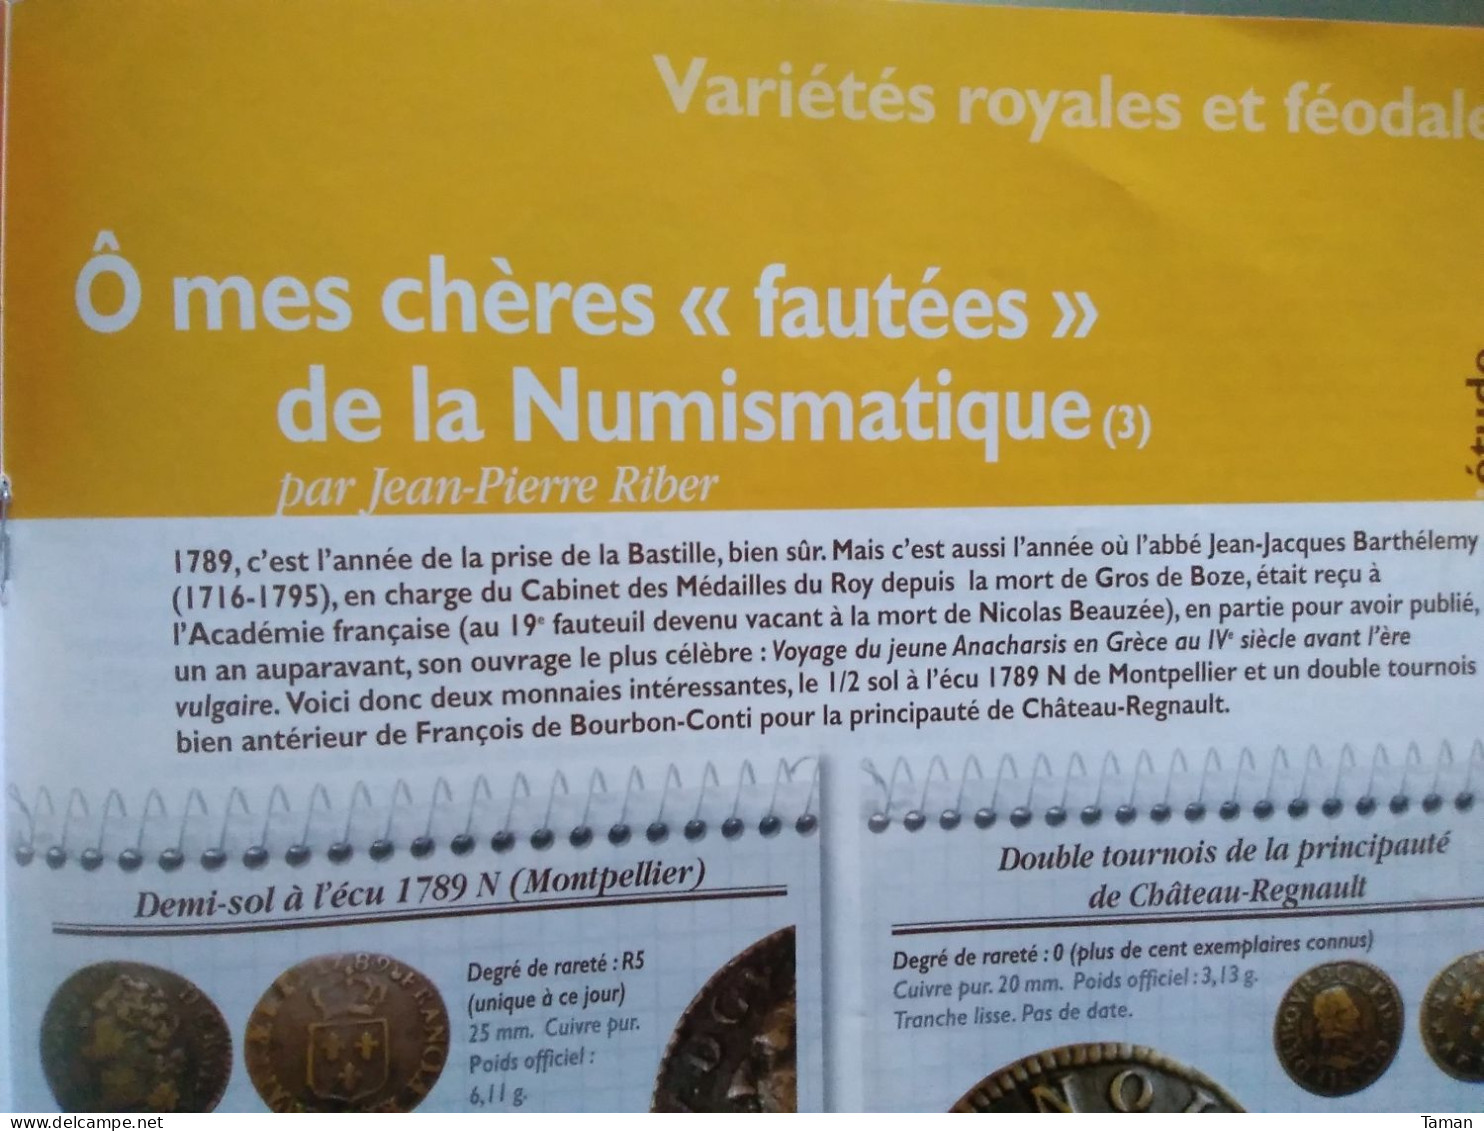 Numismatique & change - Rome - Cavaillon - Louis XIV - Second Empire - Etats de l'Afrique centrale